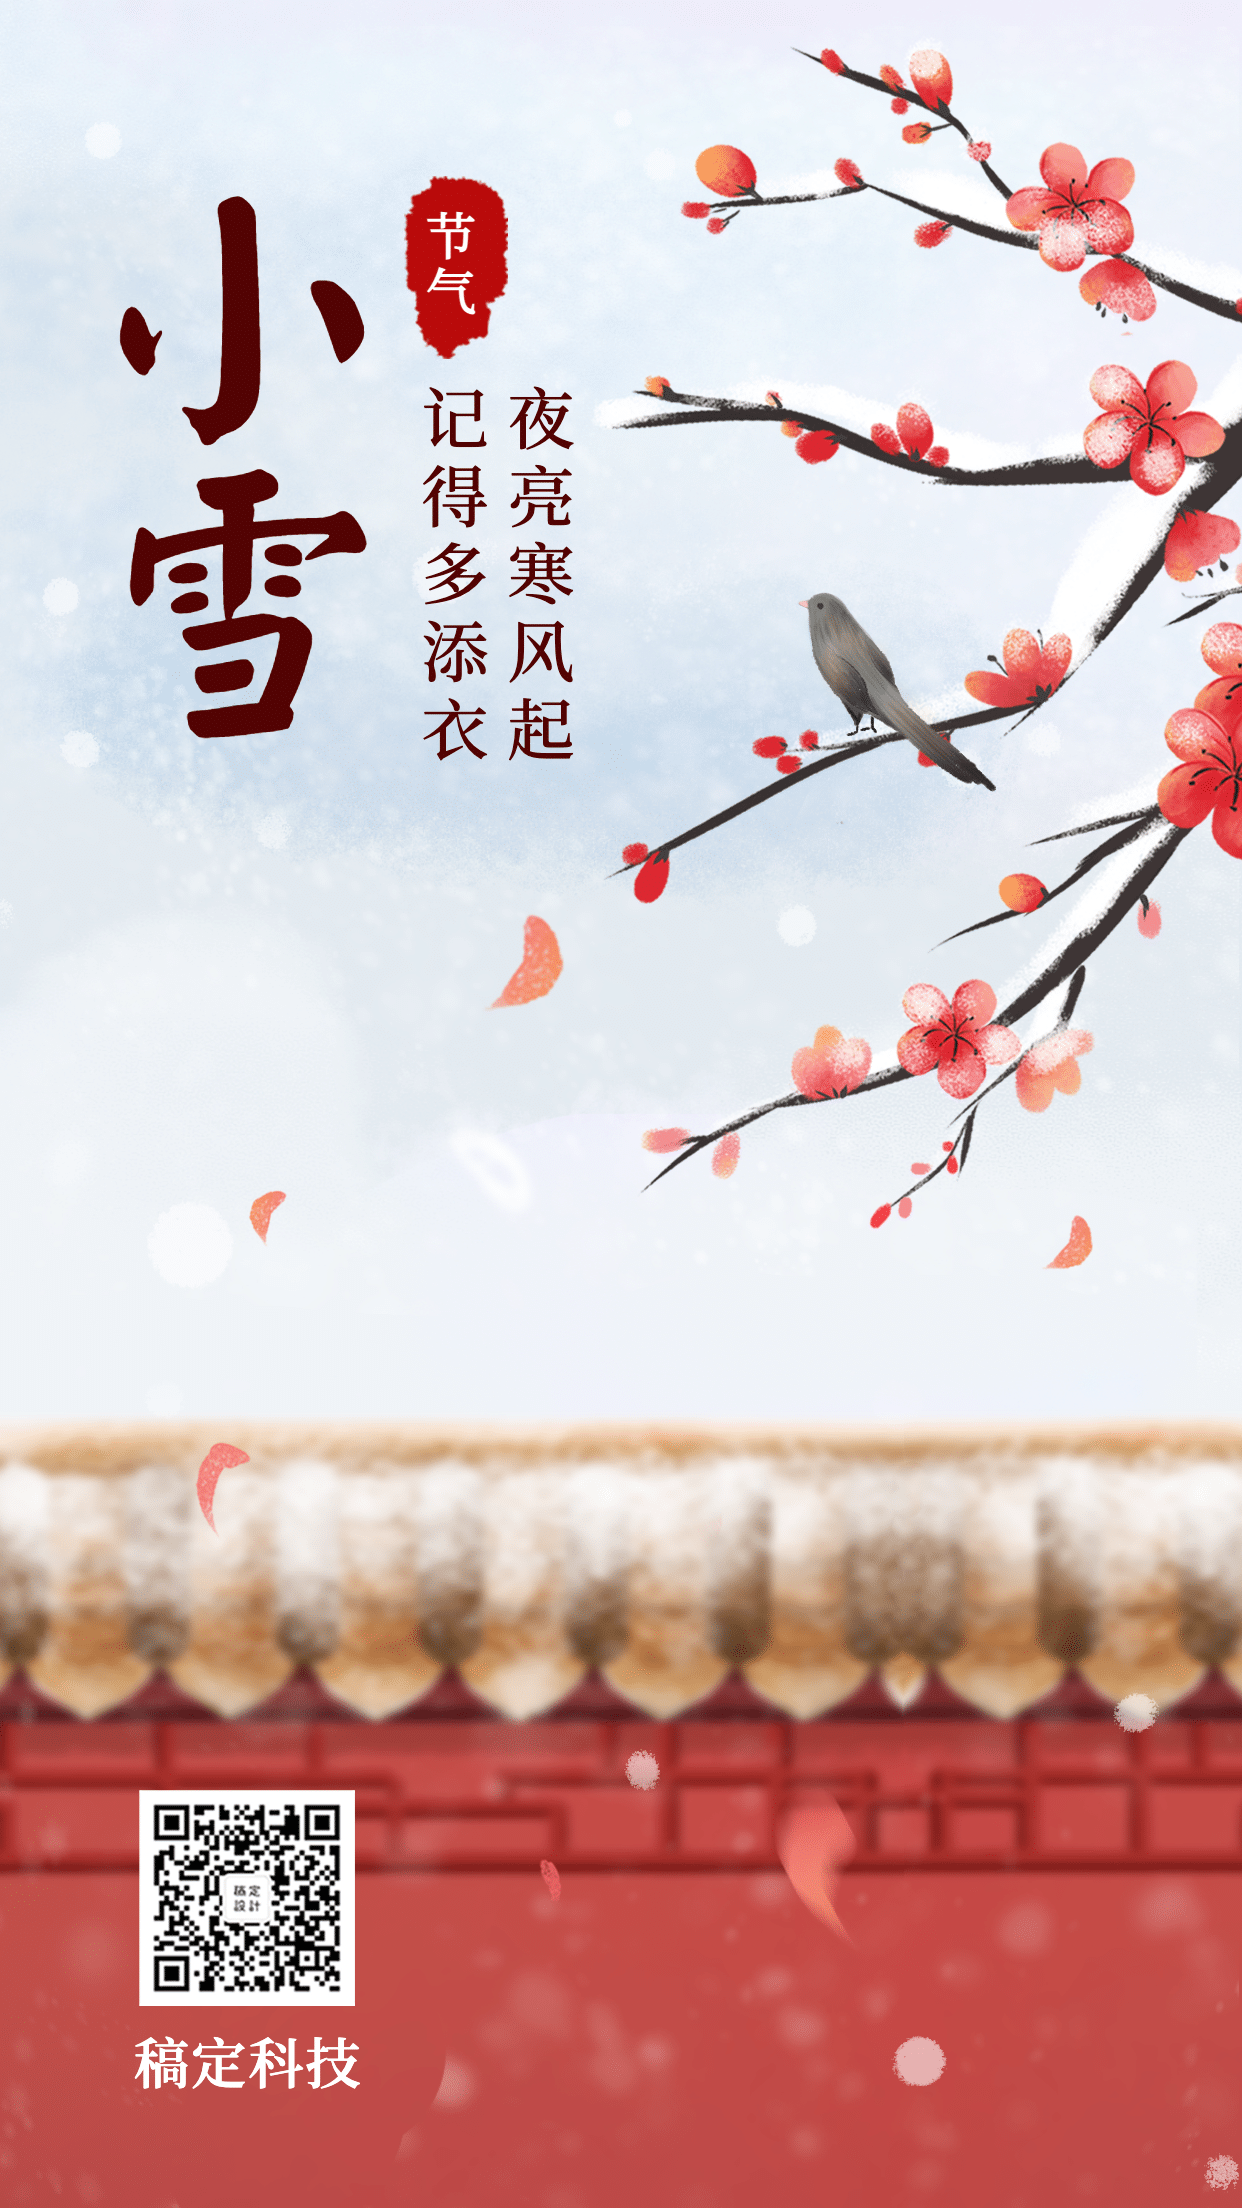 立冬节气冬天祝福下雪早安手机海报